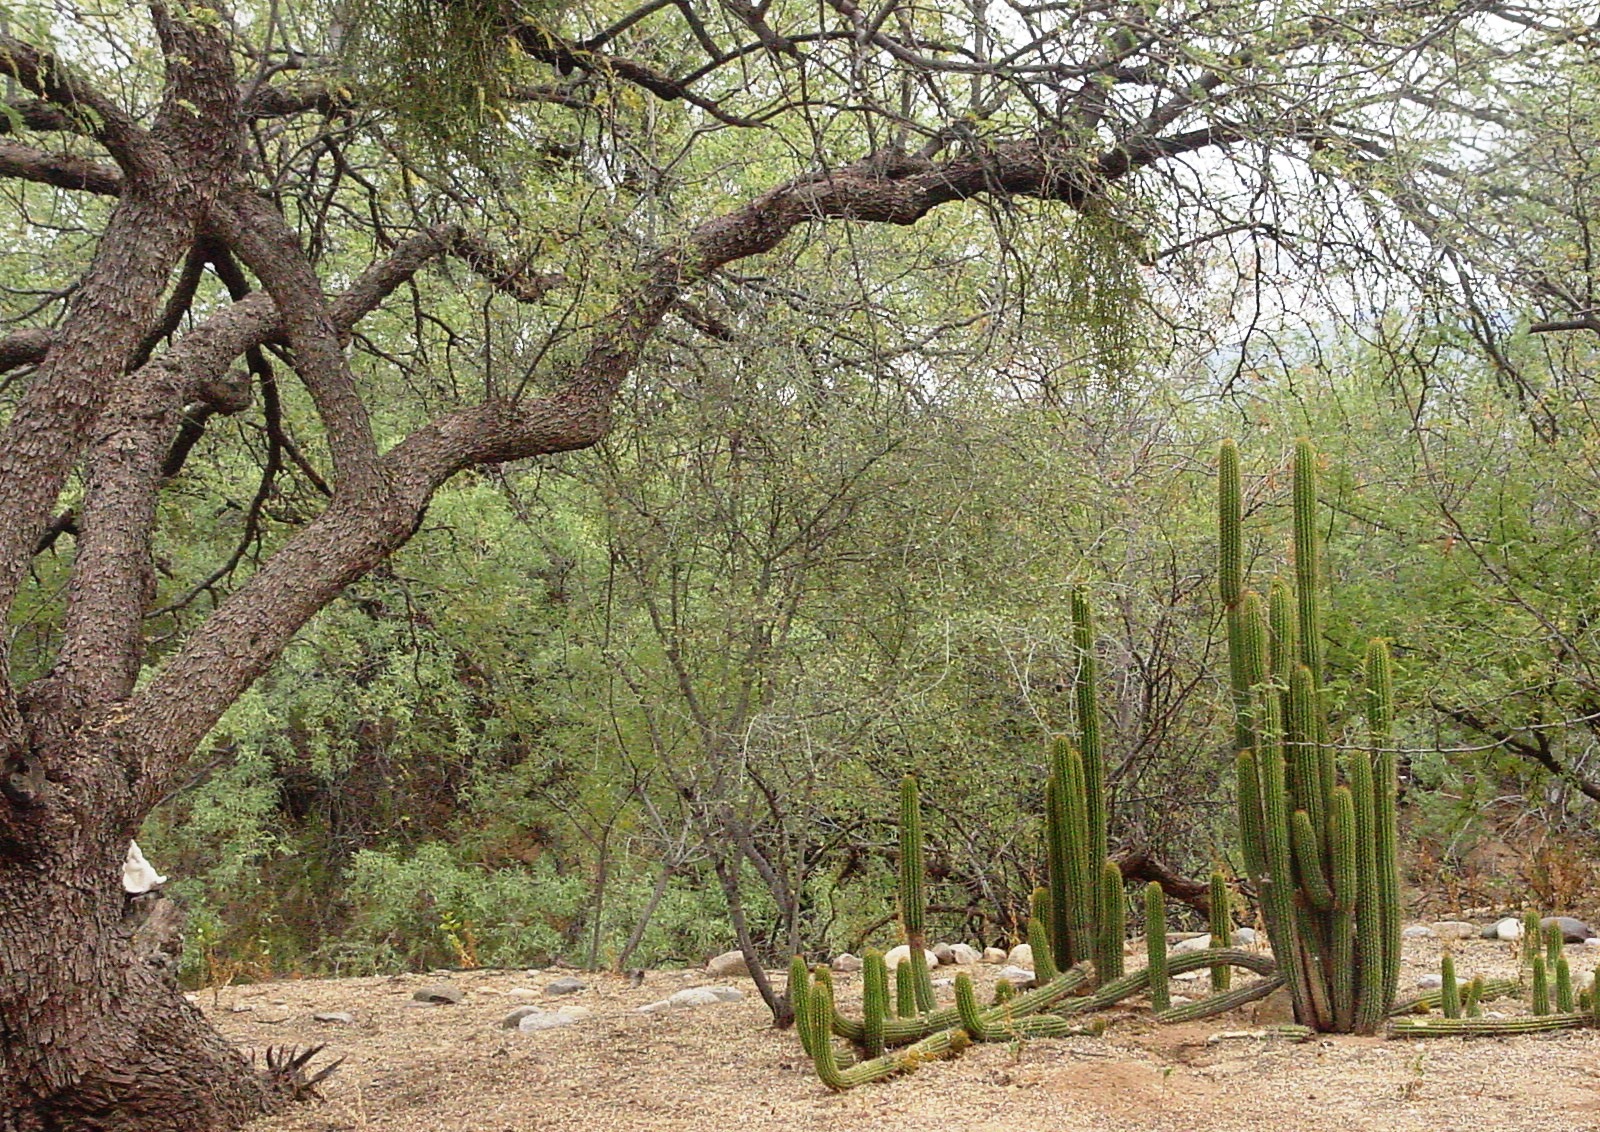 Cactus Cobras